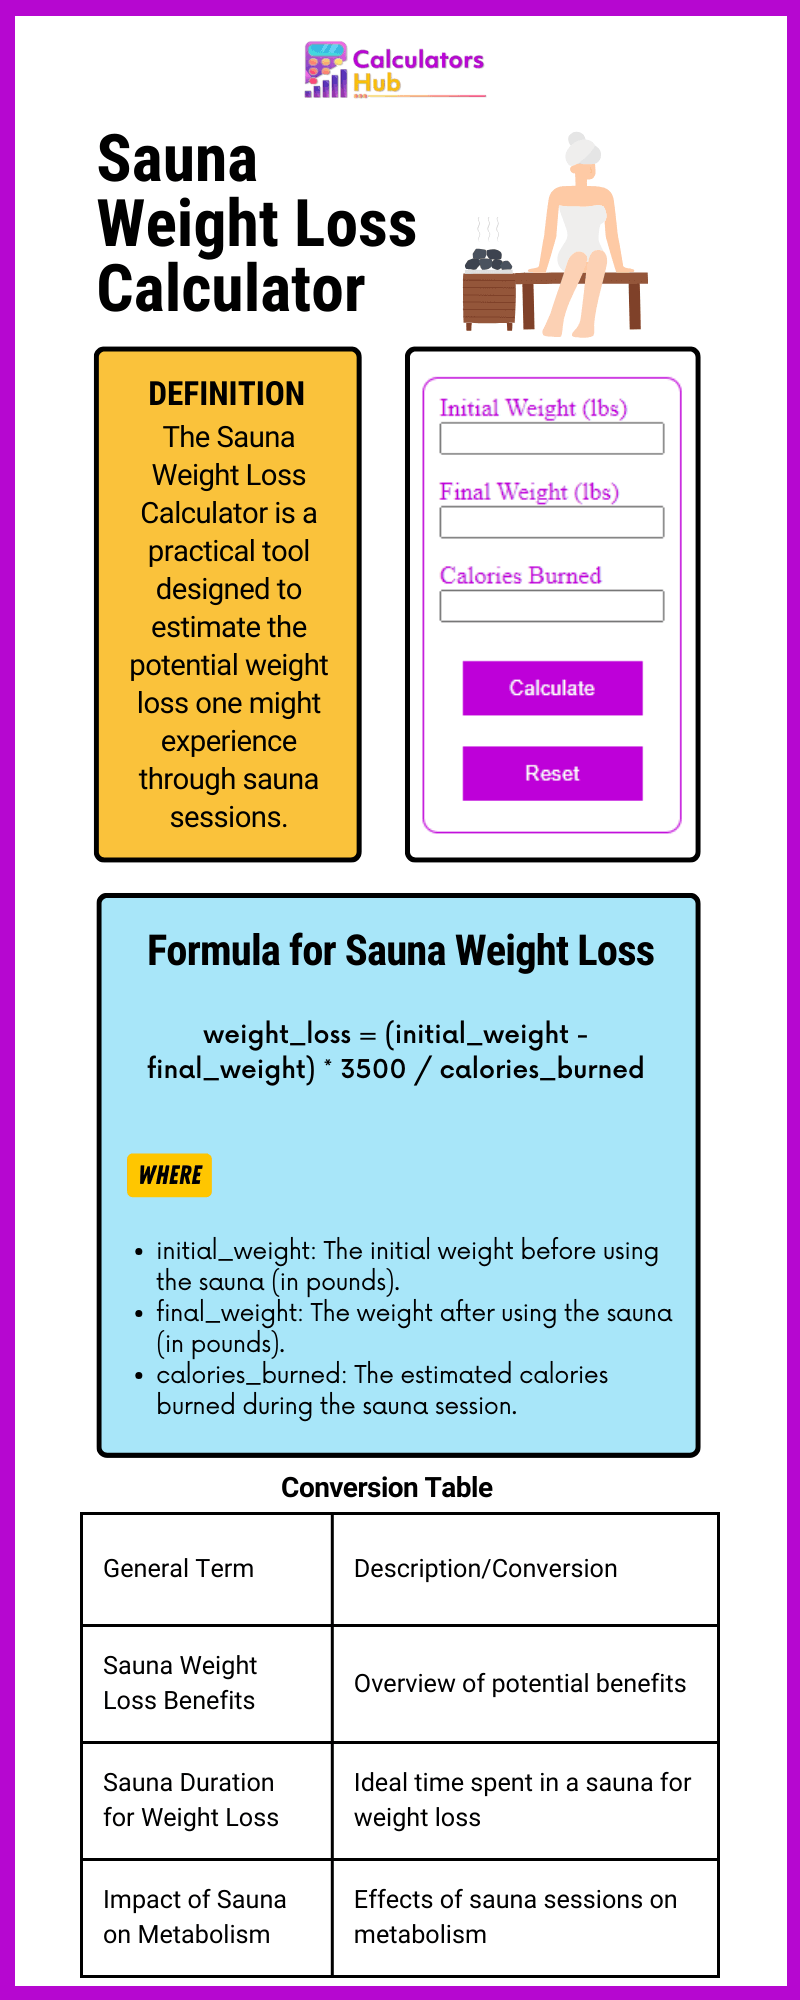 Sauna Weight Loss Calculator